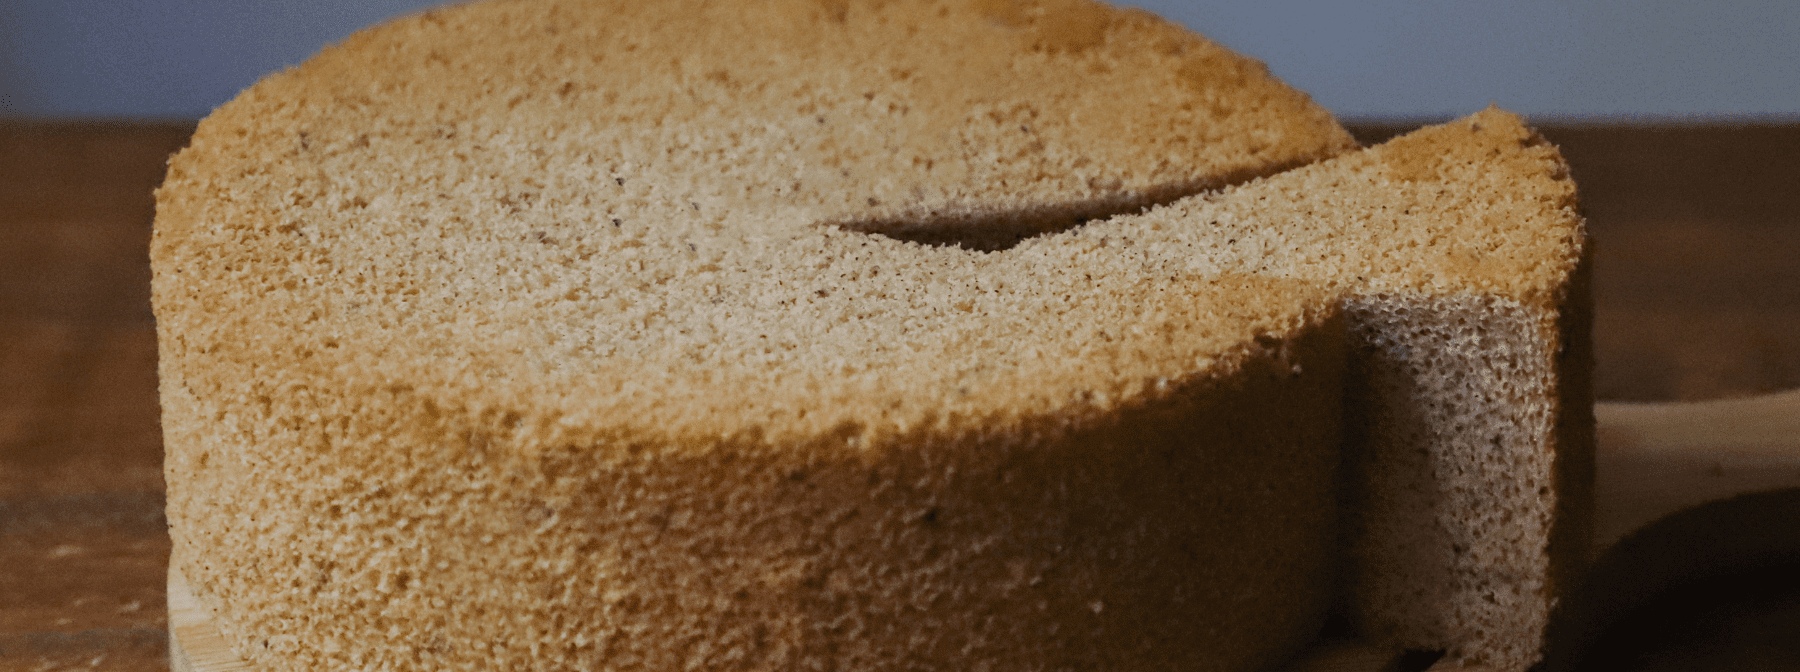 Brownie z fasoli | Przepis na ciasto fit | Smacznie i zdrowo!